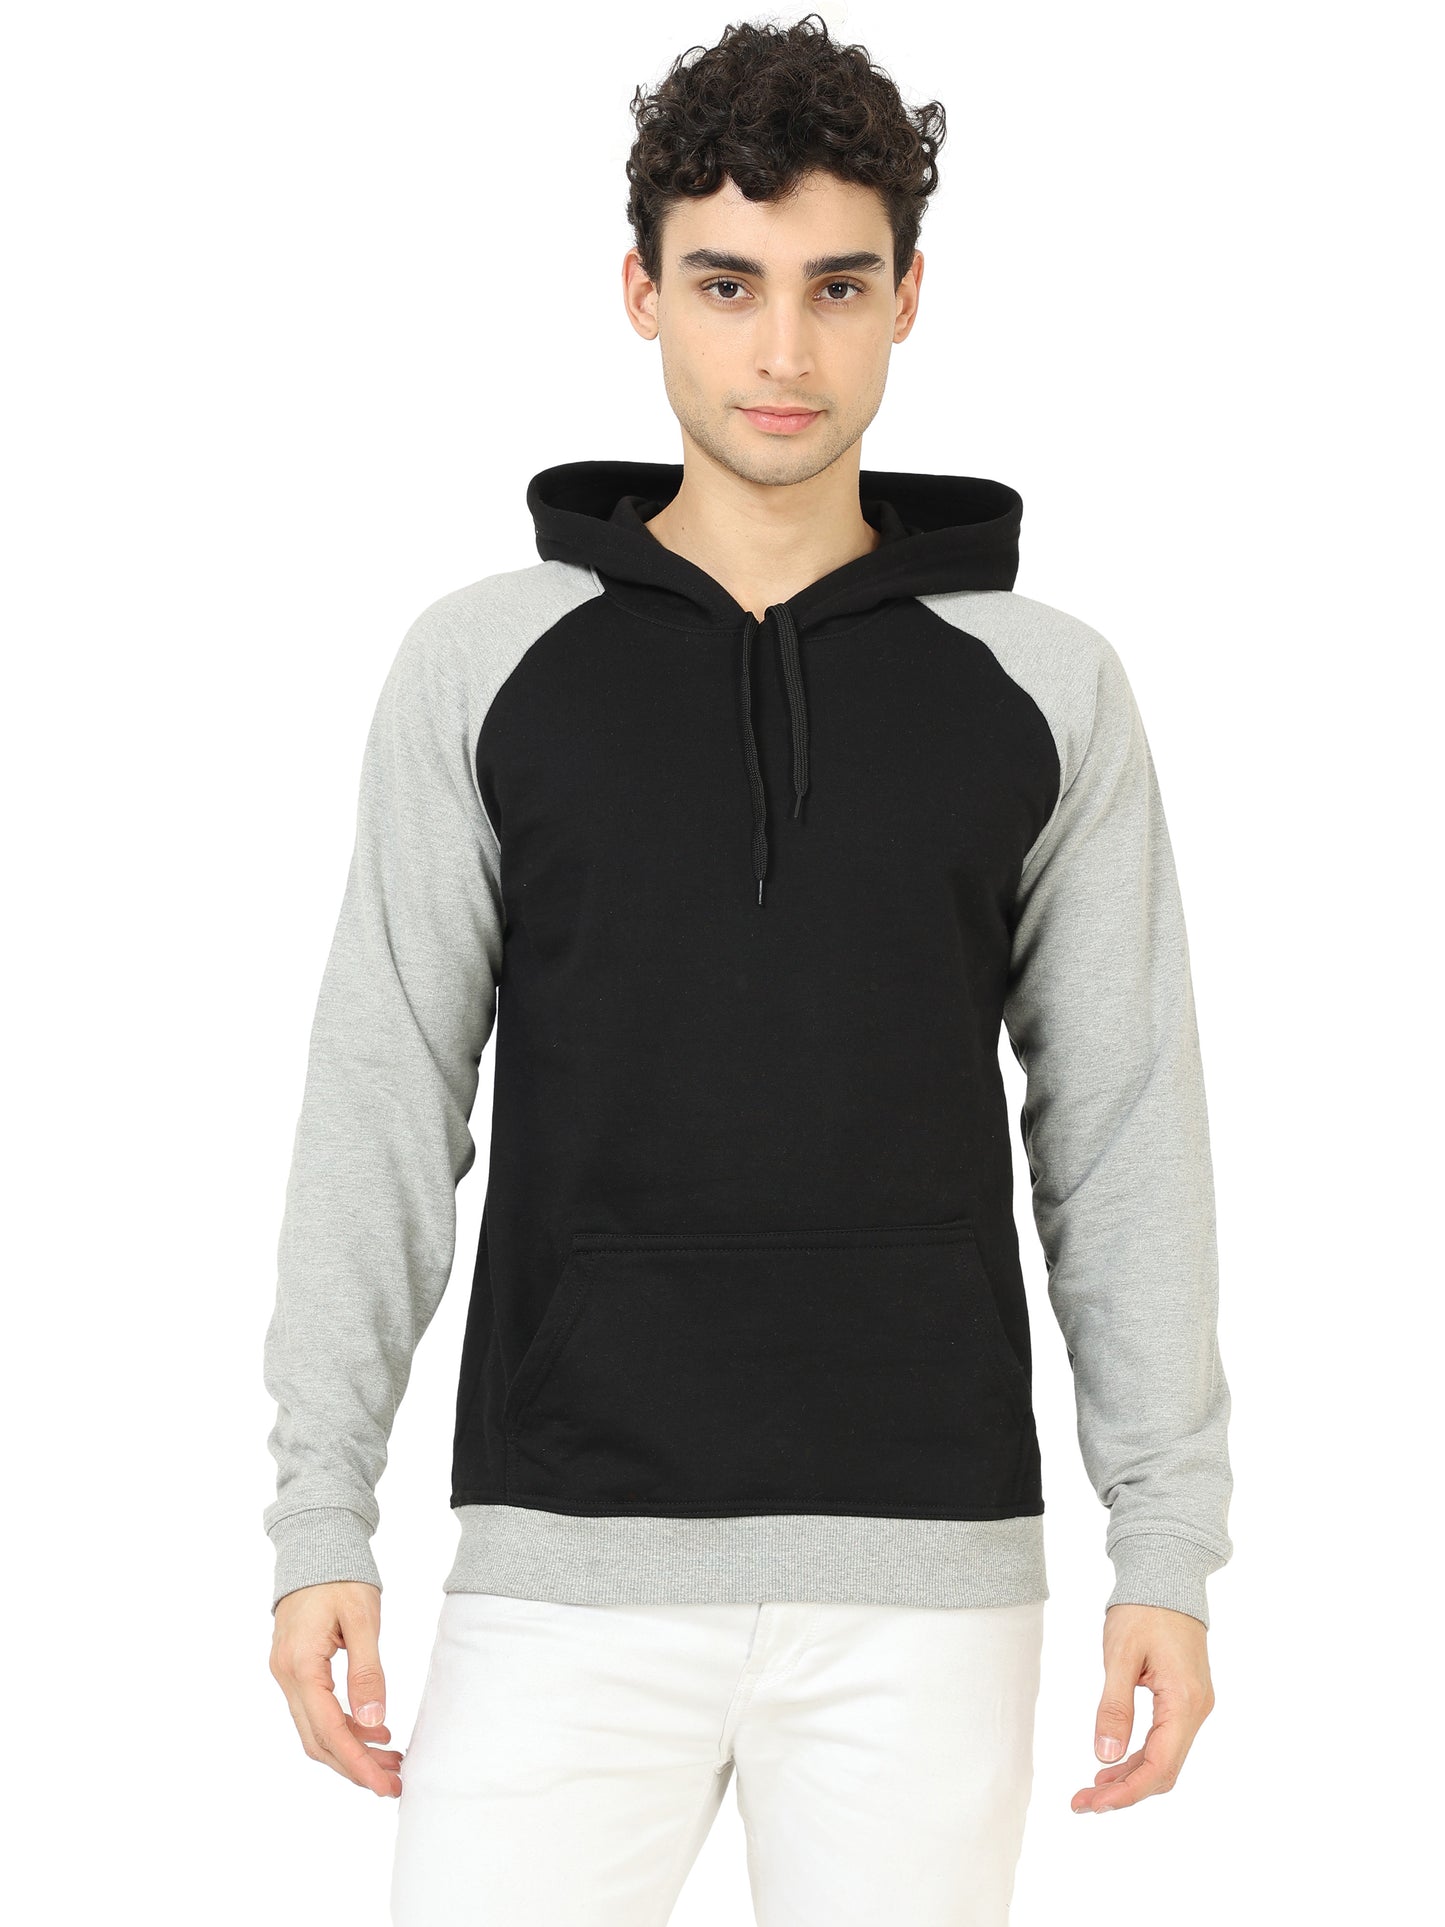 Men's Cotton Full Sleeve Color Block Blackgrey Color Hoodies/Sweatshirts